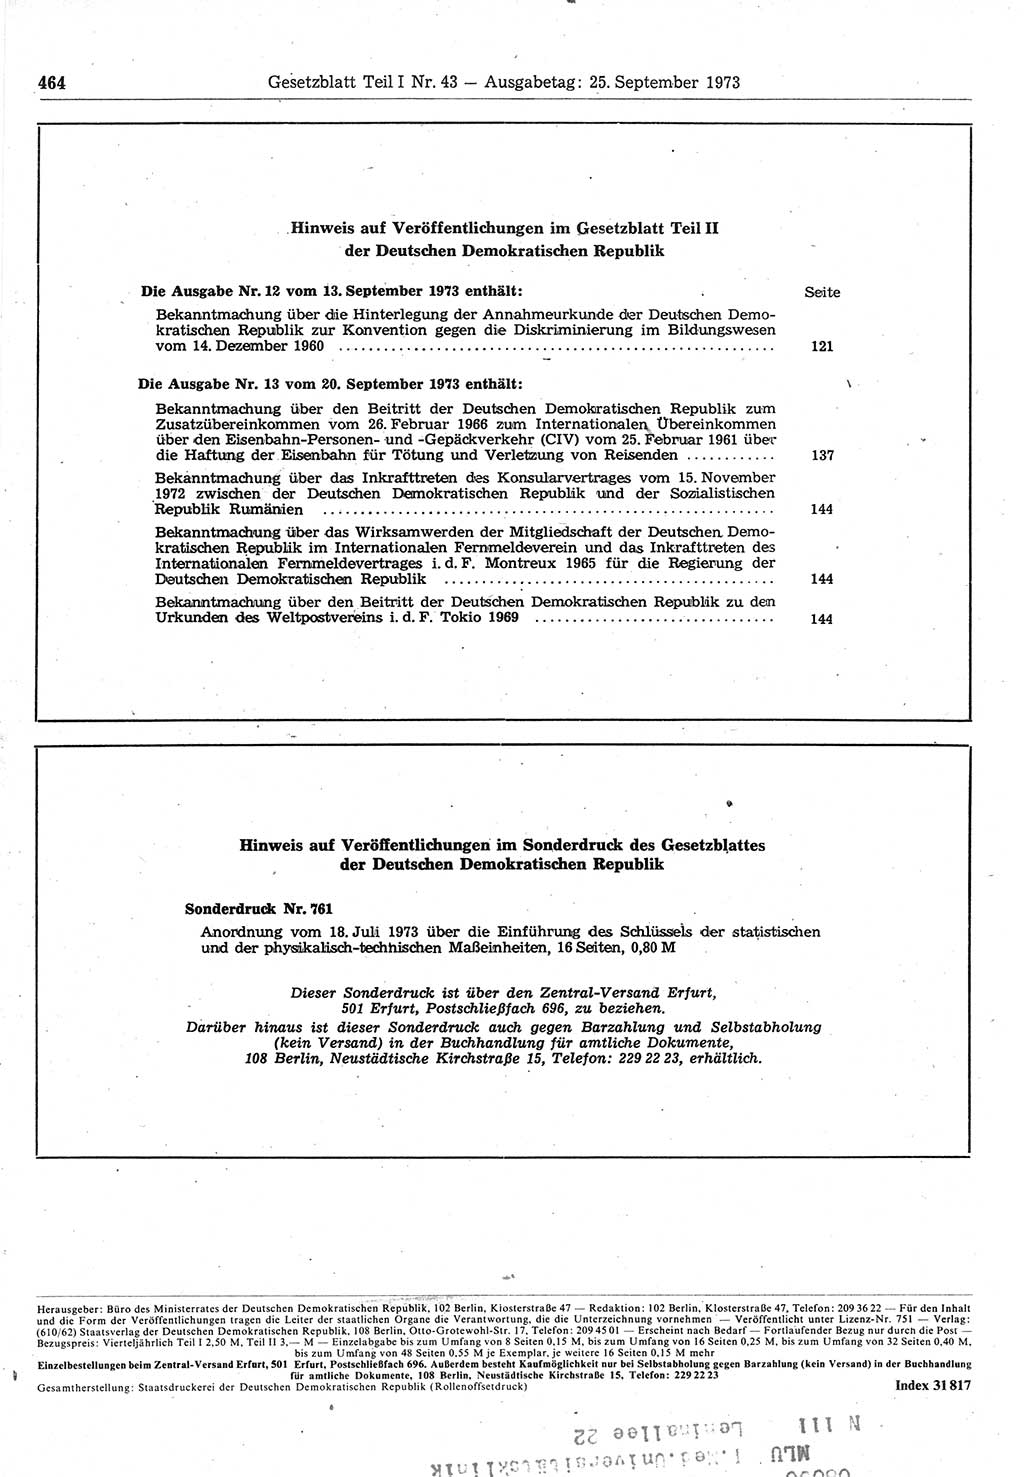 Gesetzblatt (GBl.) der Deutschen Demokratischen Republik (DDR) Teil Ⅰ 1973, Seite 464 (GBl. DDR Ⅰ 1973, S. 464)